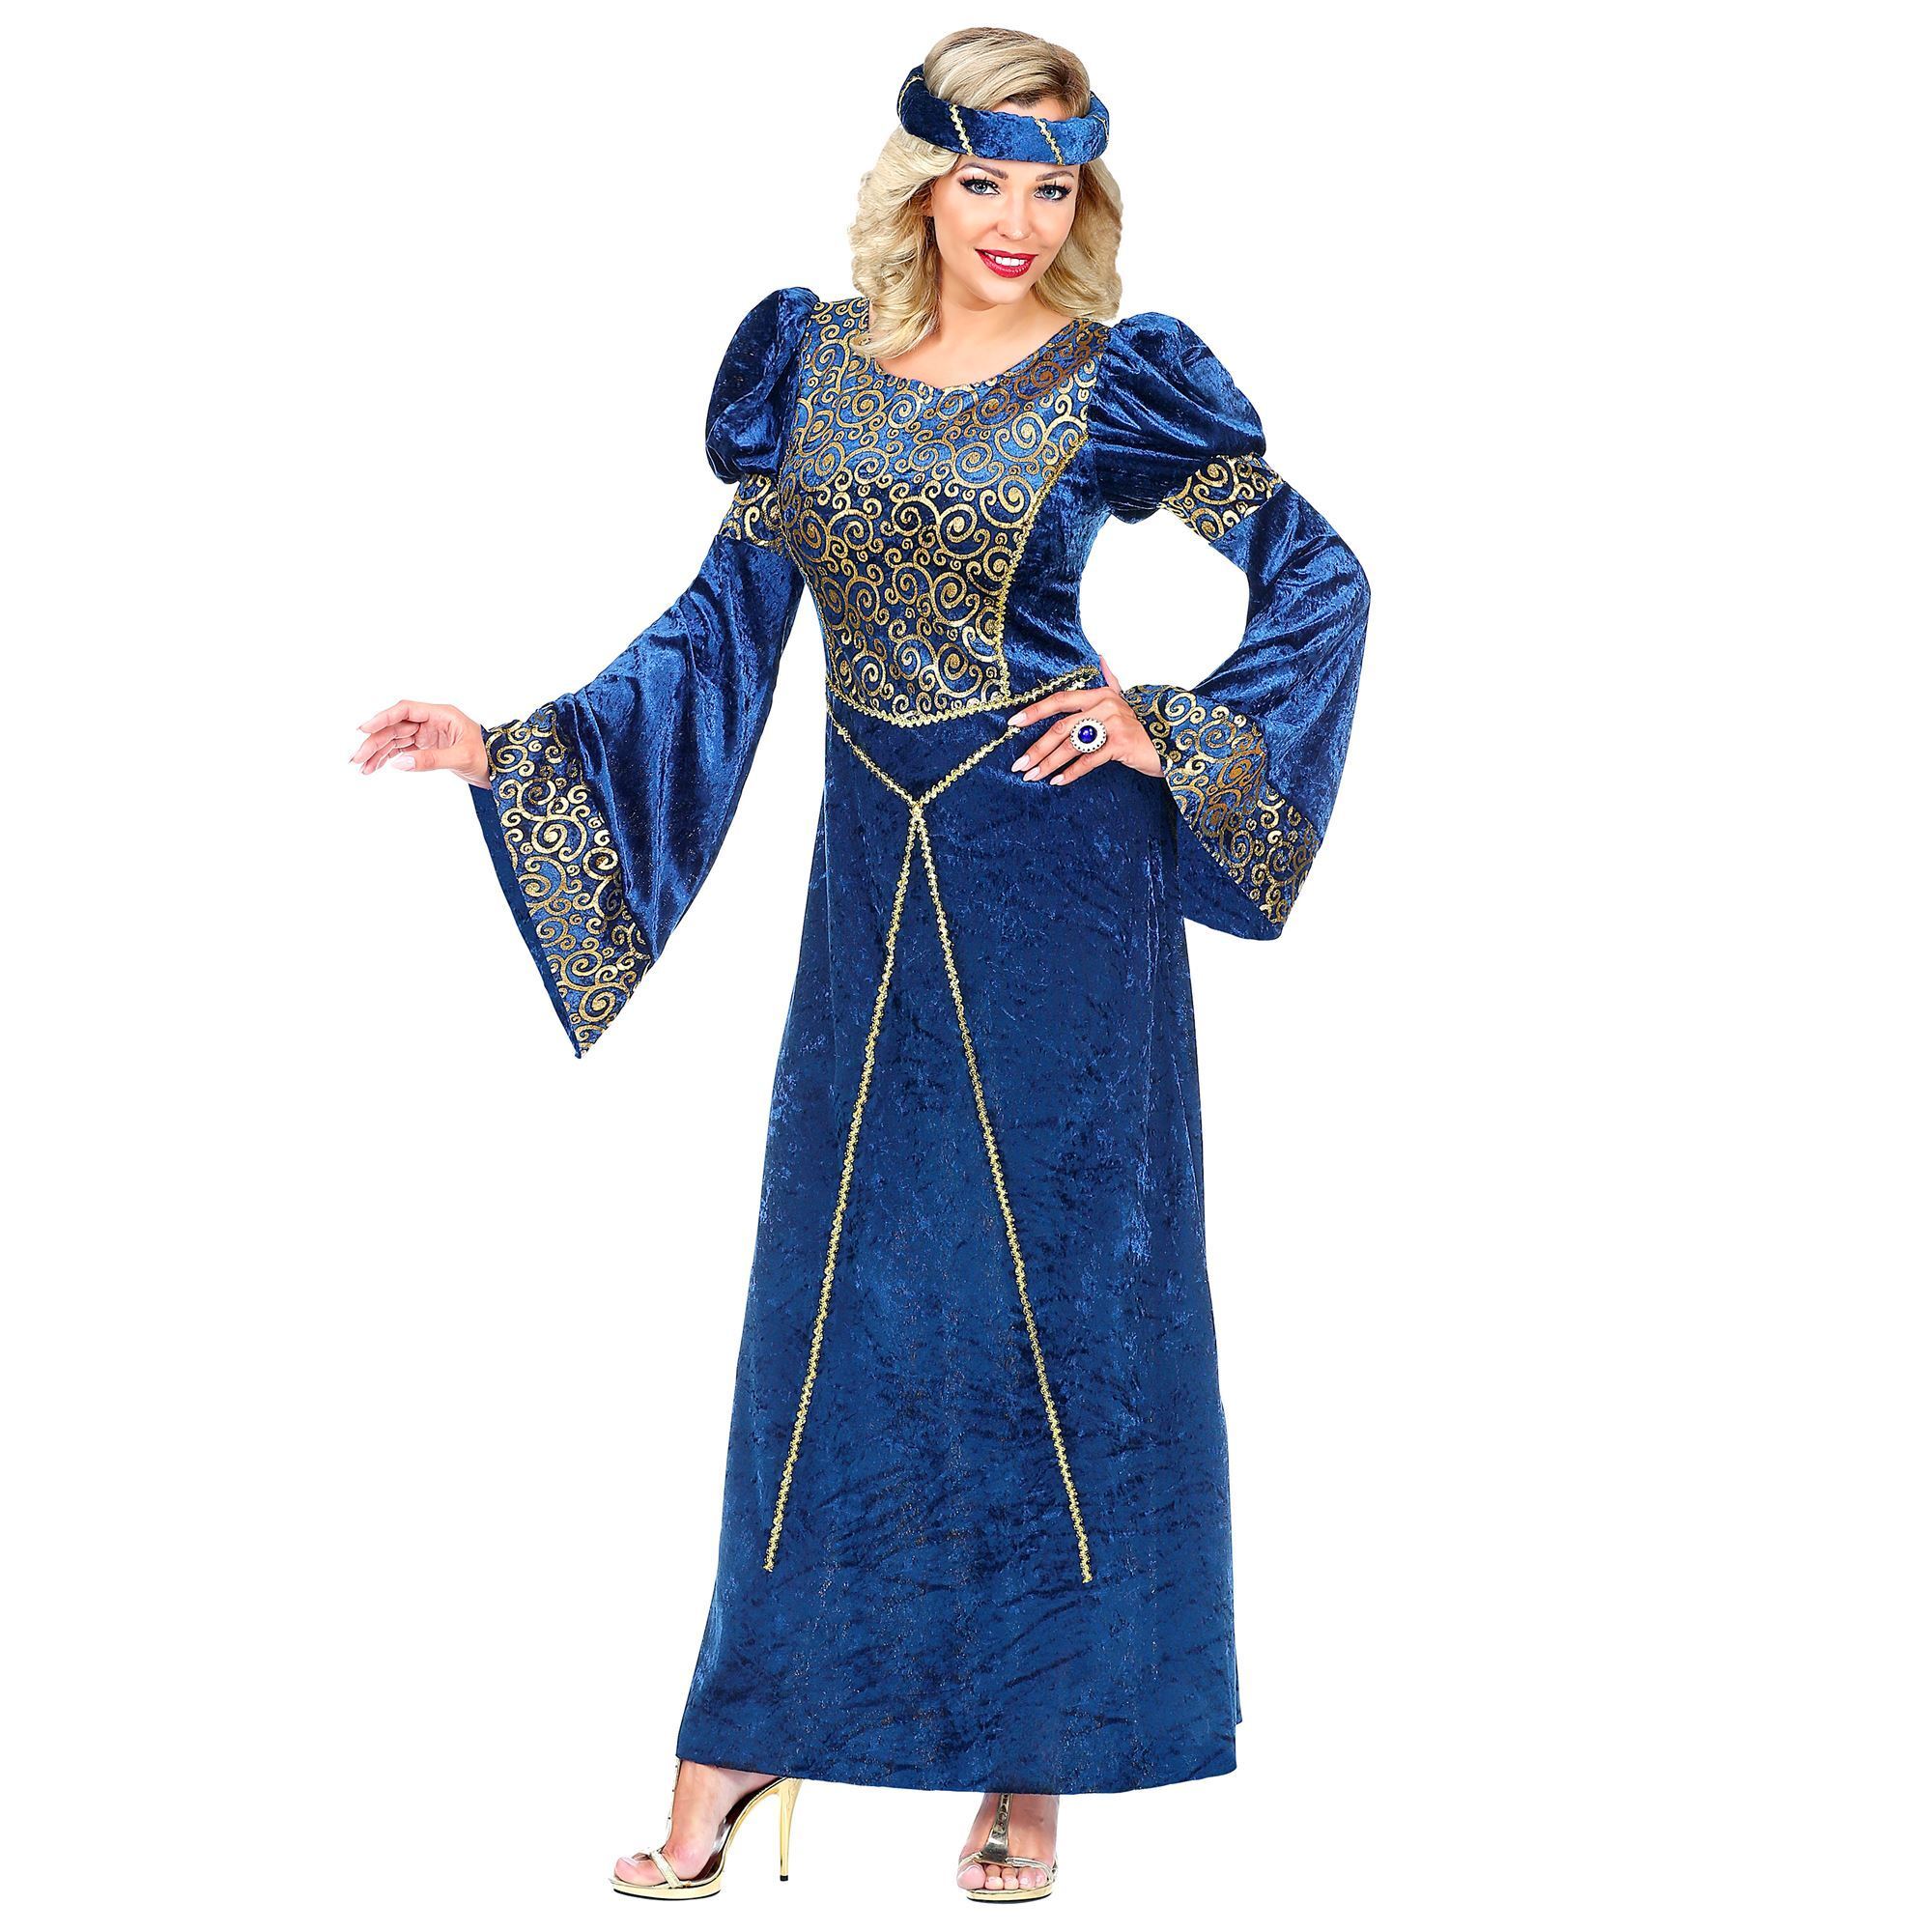 Middeleeuwen jurkje dames middeleeuwse